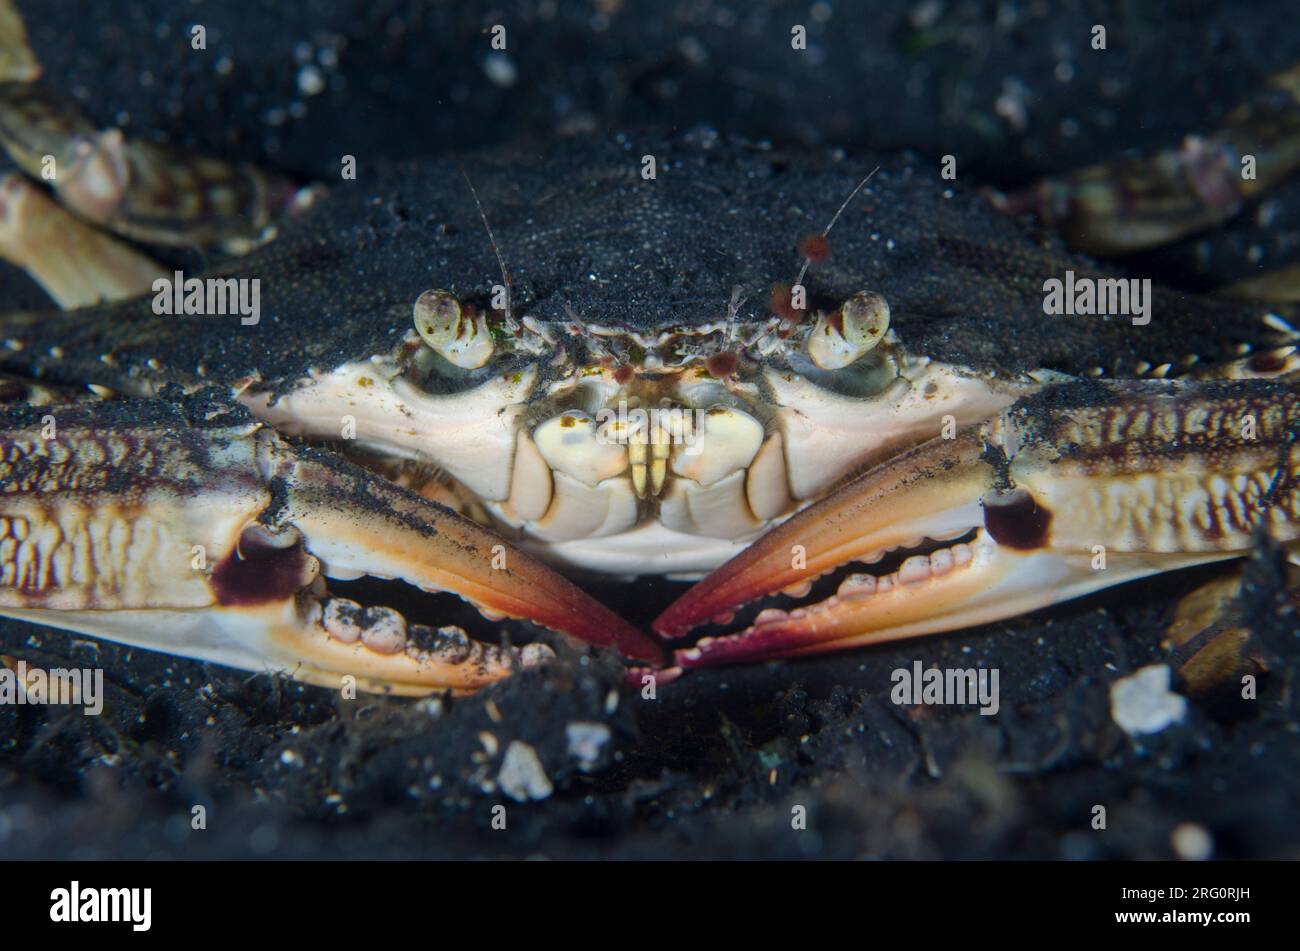 Swimming Crab, Portunus pelagicus, night dive, night dive, TK1 dive site, Lembeh Straits, Sulawesi, Indonesia Stock Photo